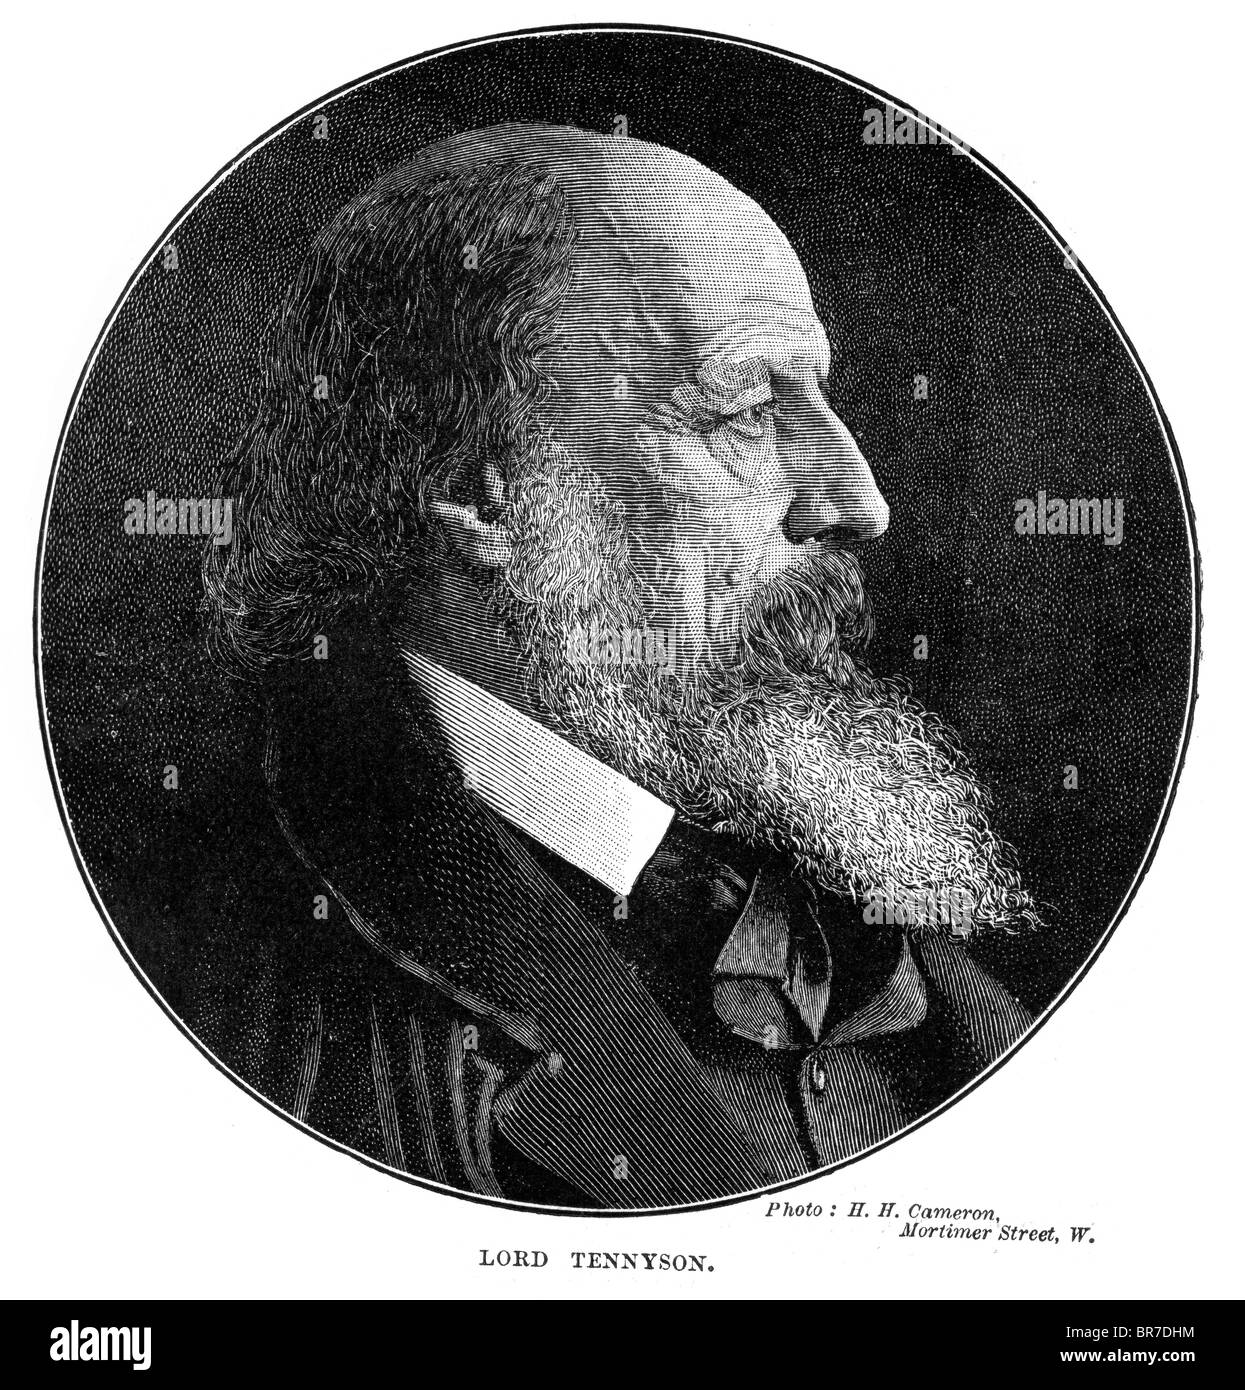 Alfred Tennyson, 1er baron Tennyson, FRS (1809 à 1892), mieux connu sous le nom de ', Alfred Lord Tennyson, poète lauréat des Banque D'Images